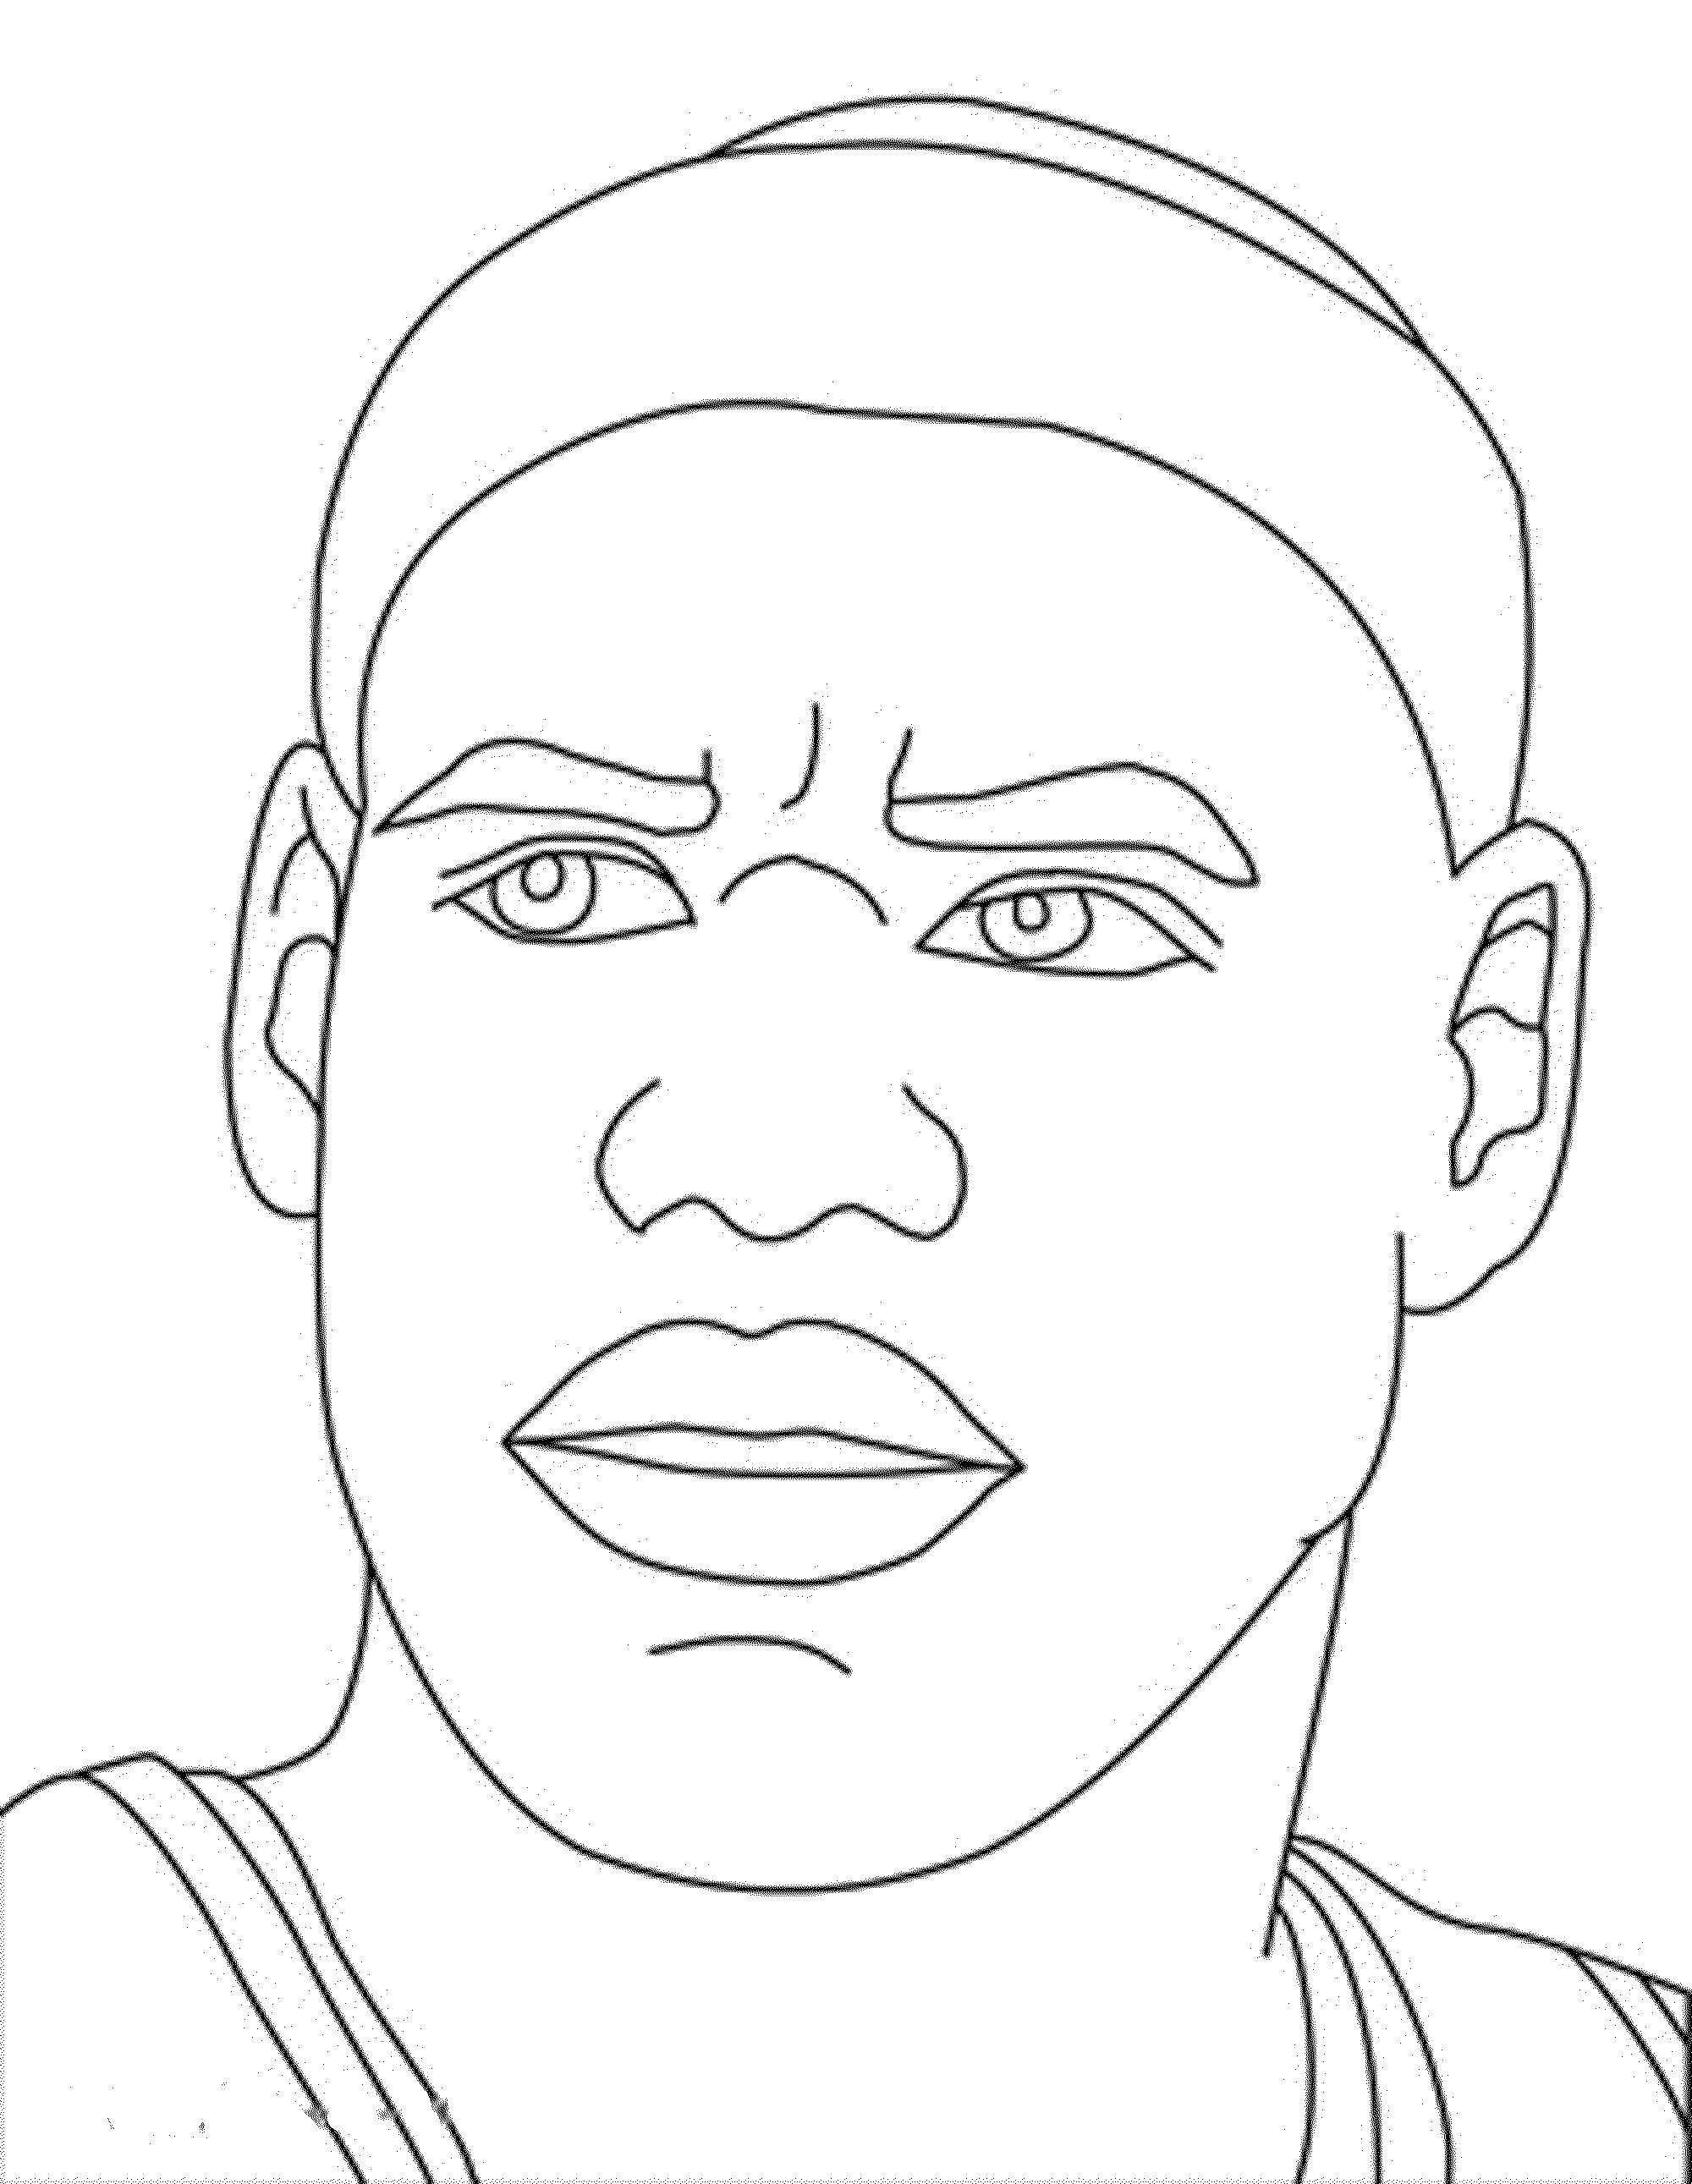 Лицо для раскрашивания. Рисунок Леброна Джеймса. Стефен карри карандашом.